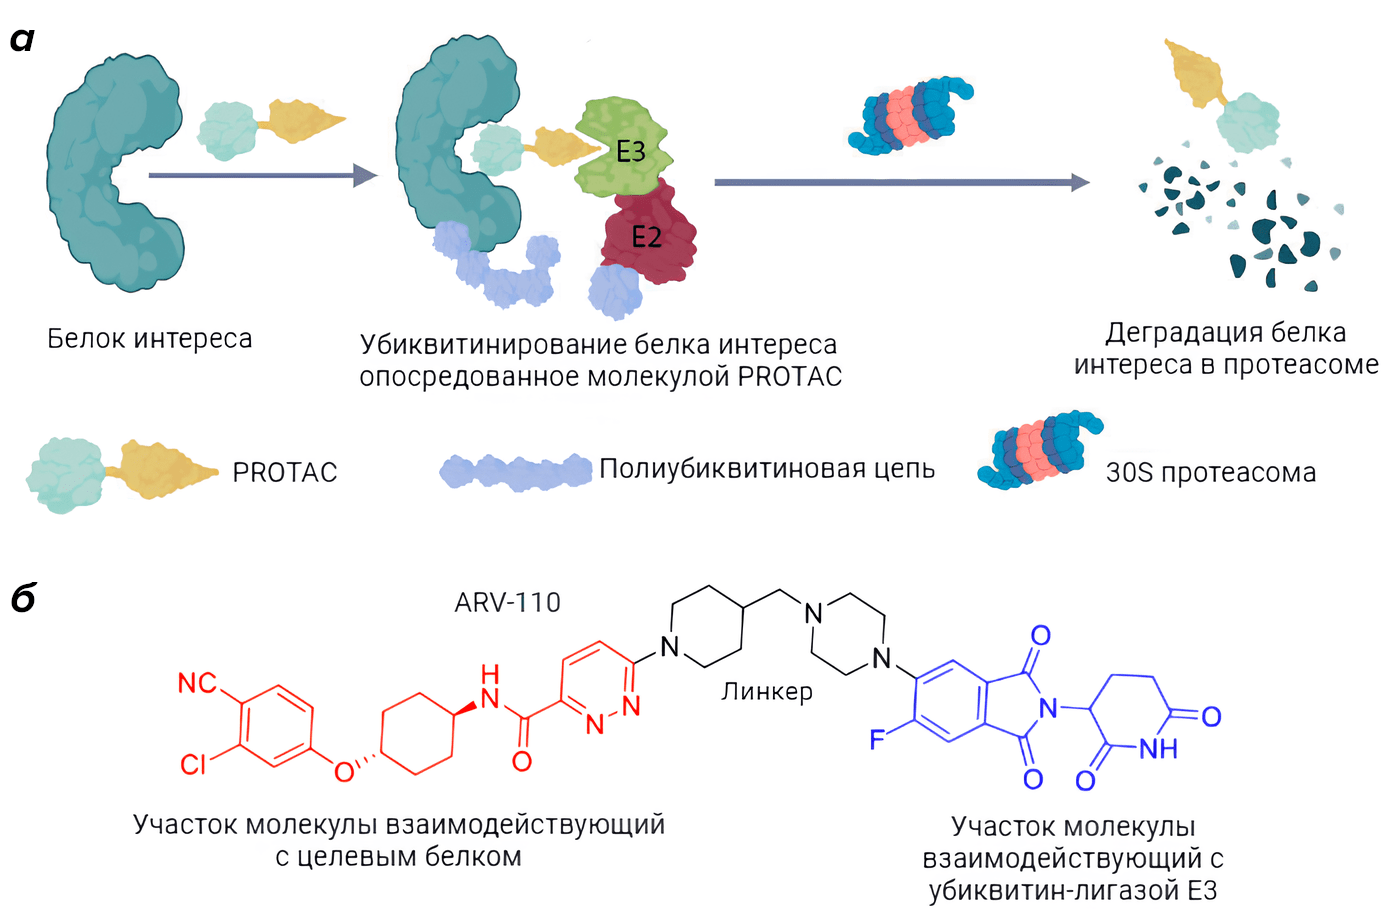 Механизм деградации белка опосредованный молекулой PROTAC